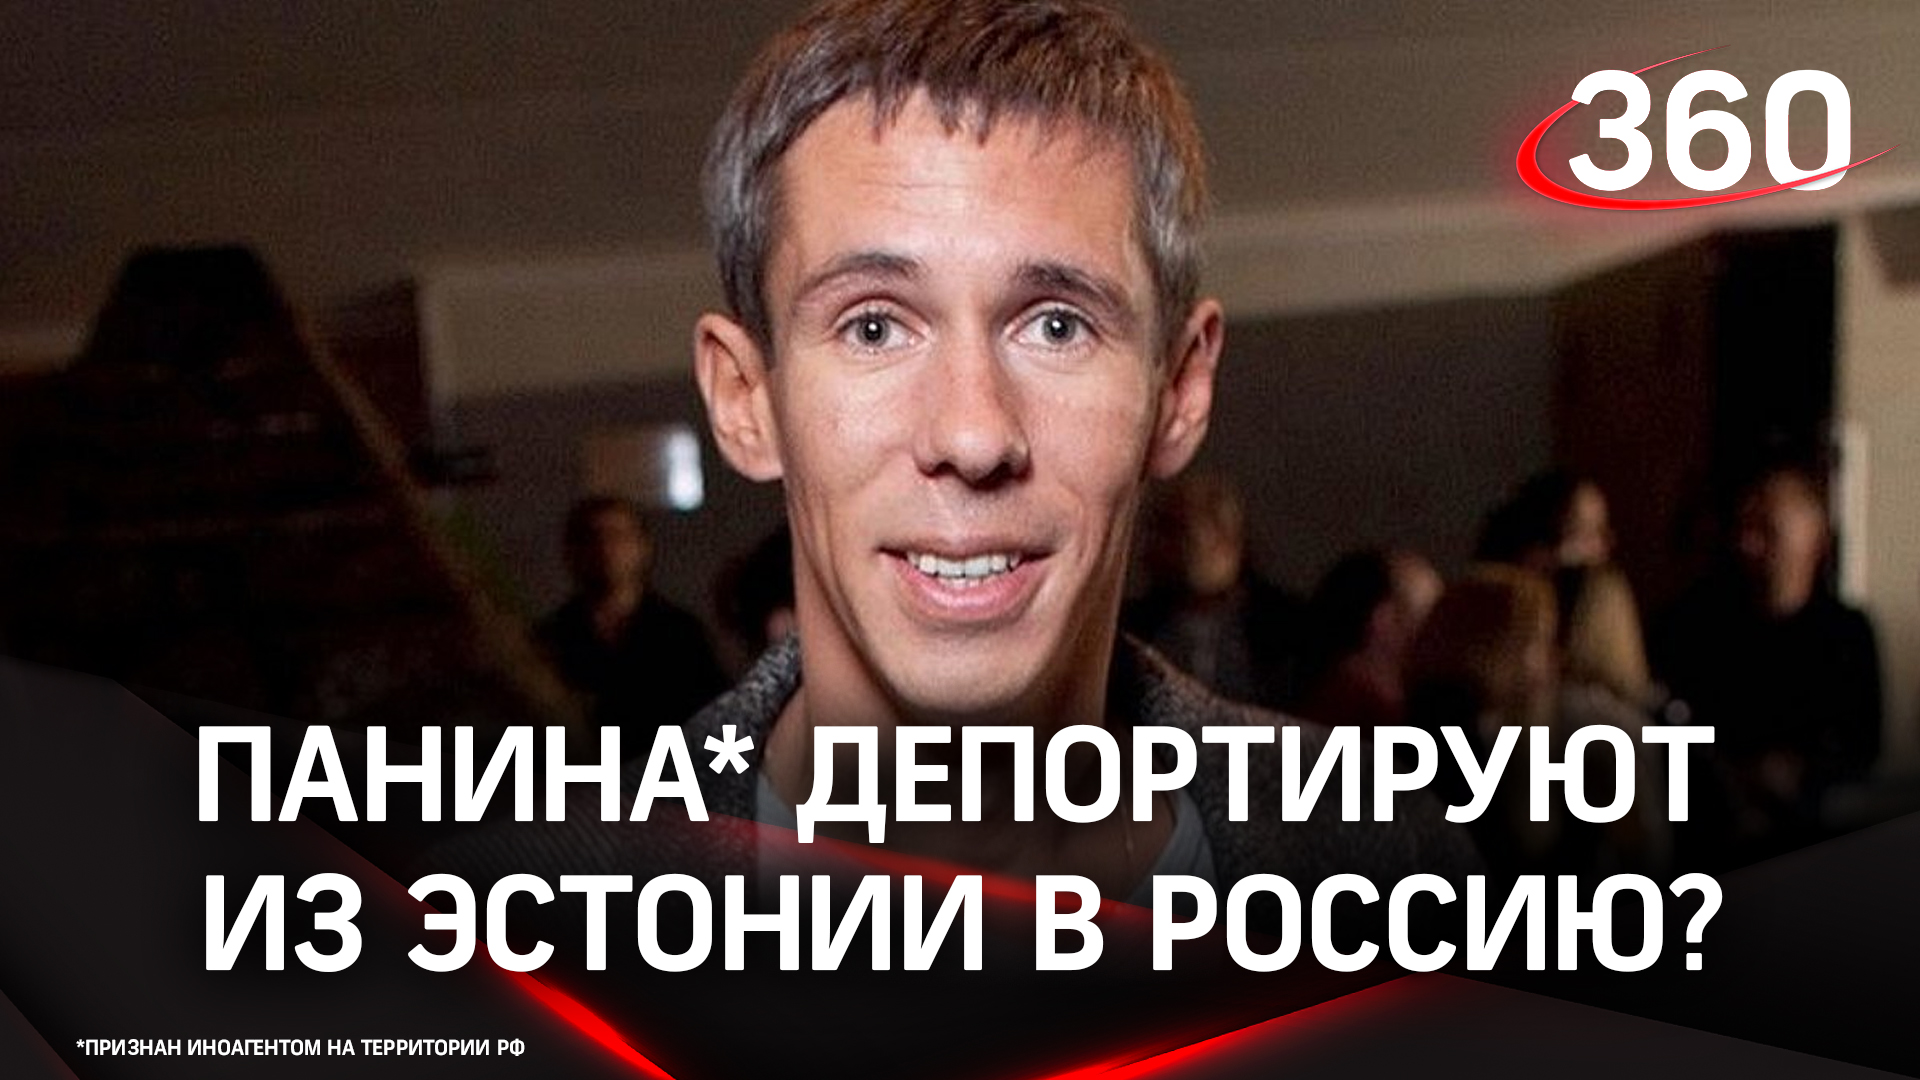 Алексея Панина* задержали в Эстонии за пьяный дебош, ему грозит депортация в Россию